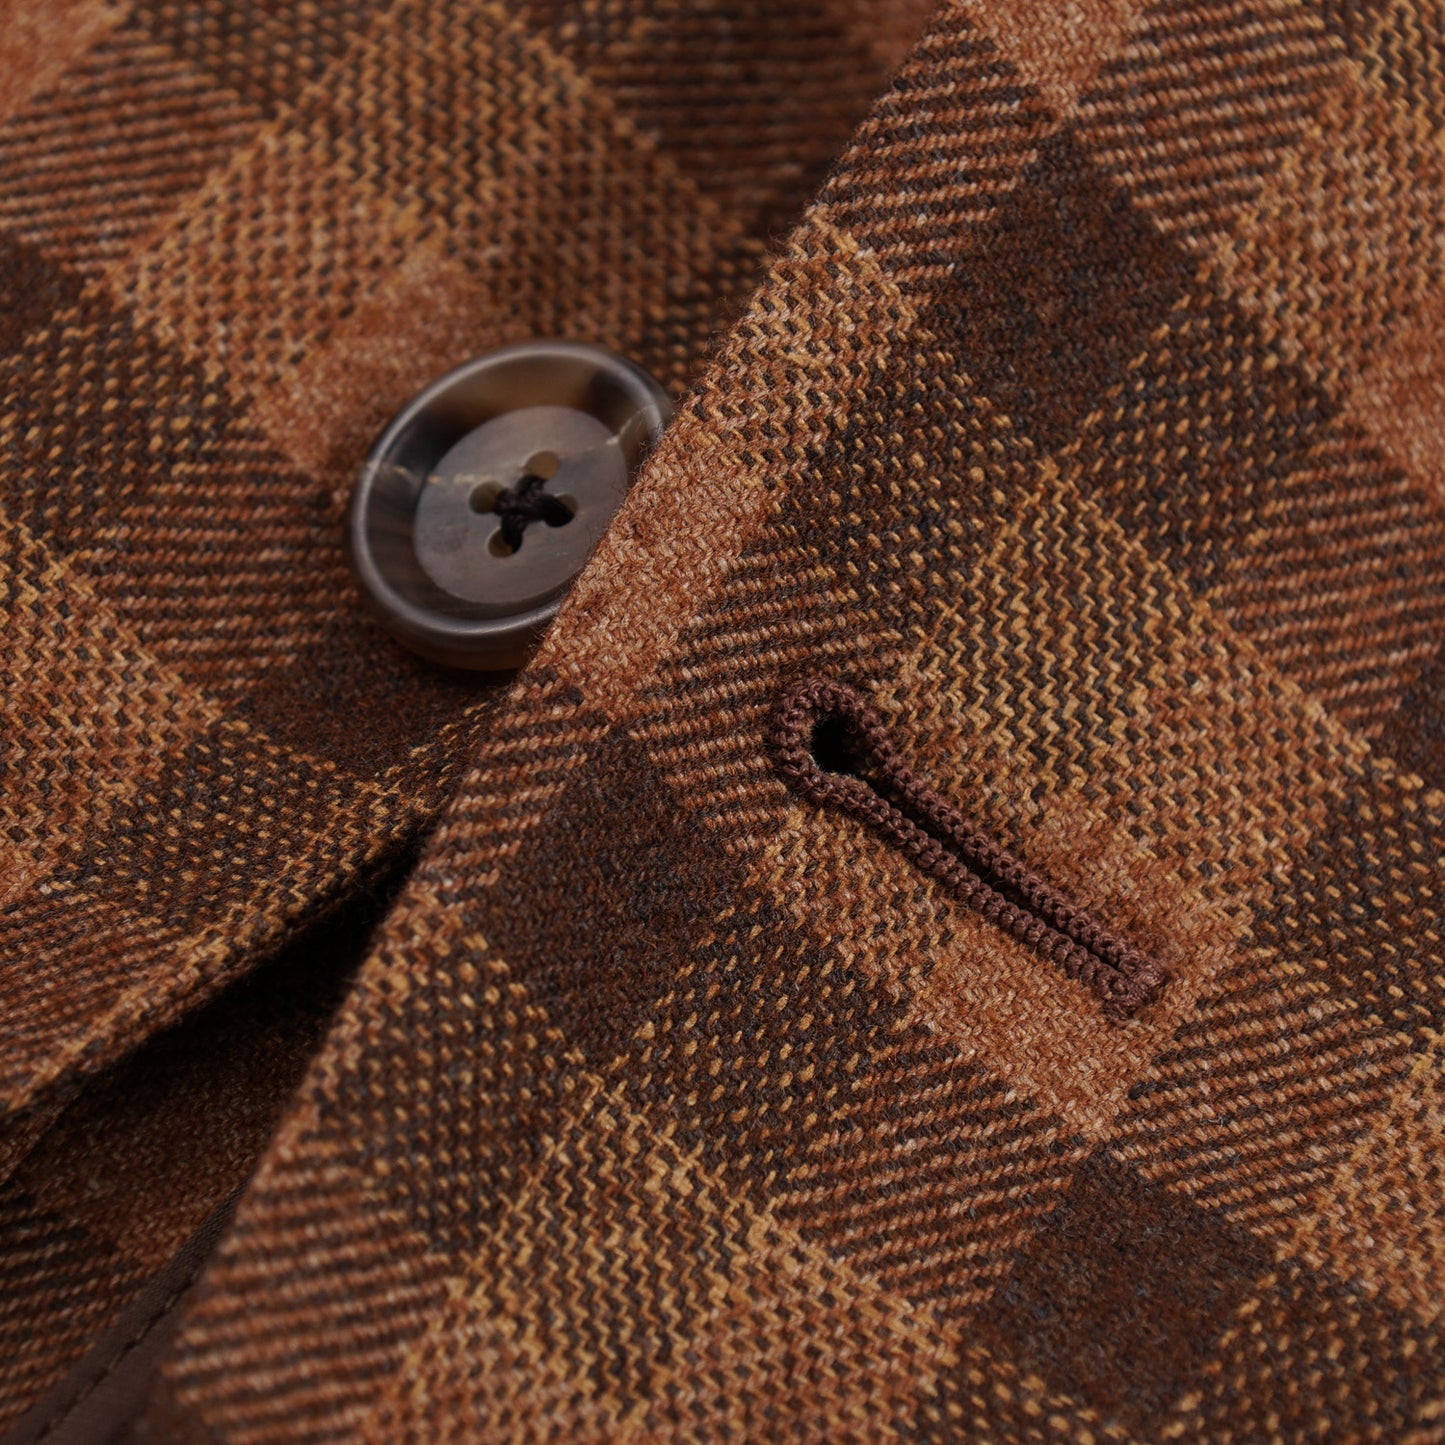 Belvest Tonal Check Wool-Silk-Cashmere Sport Coat - Top Shelf Apparel